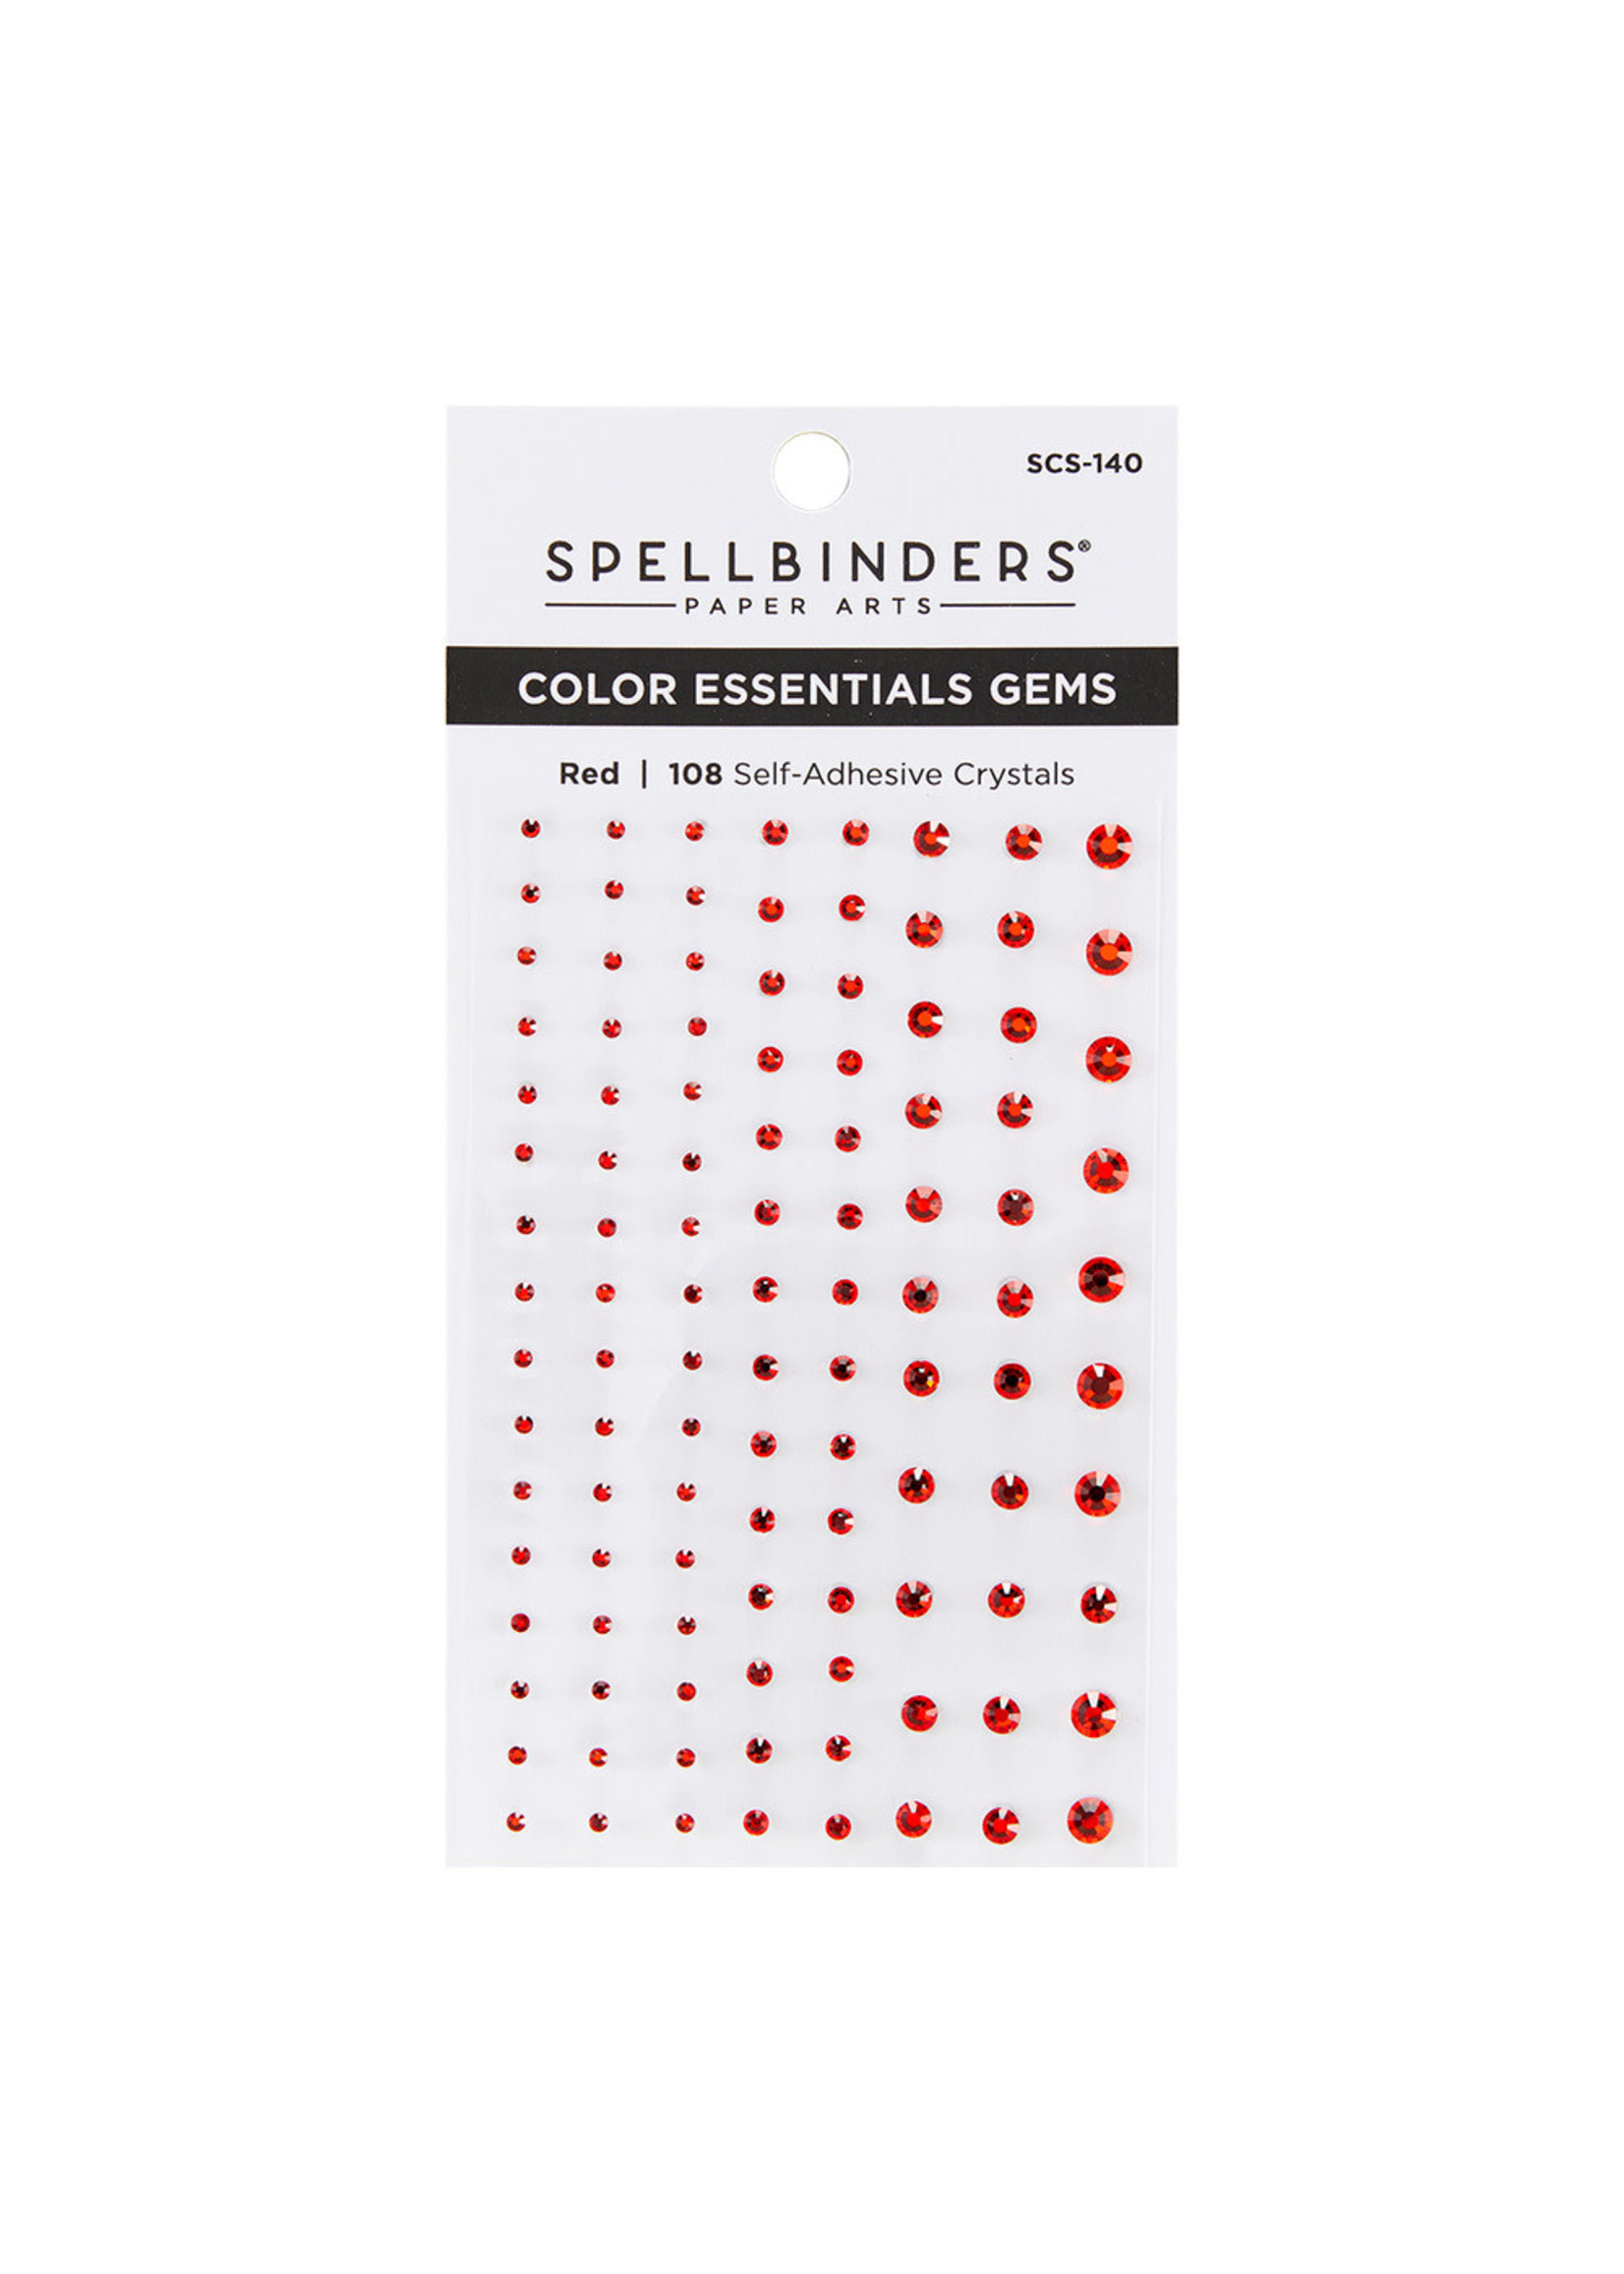 Spellbinders Spellbinders Color Essentials Gems, SCS-140 Red